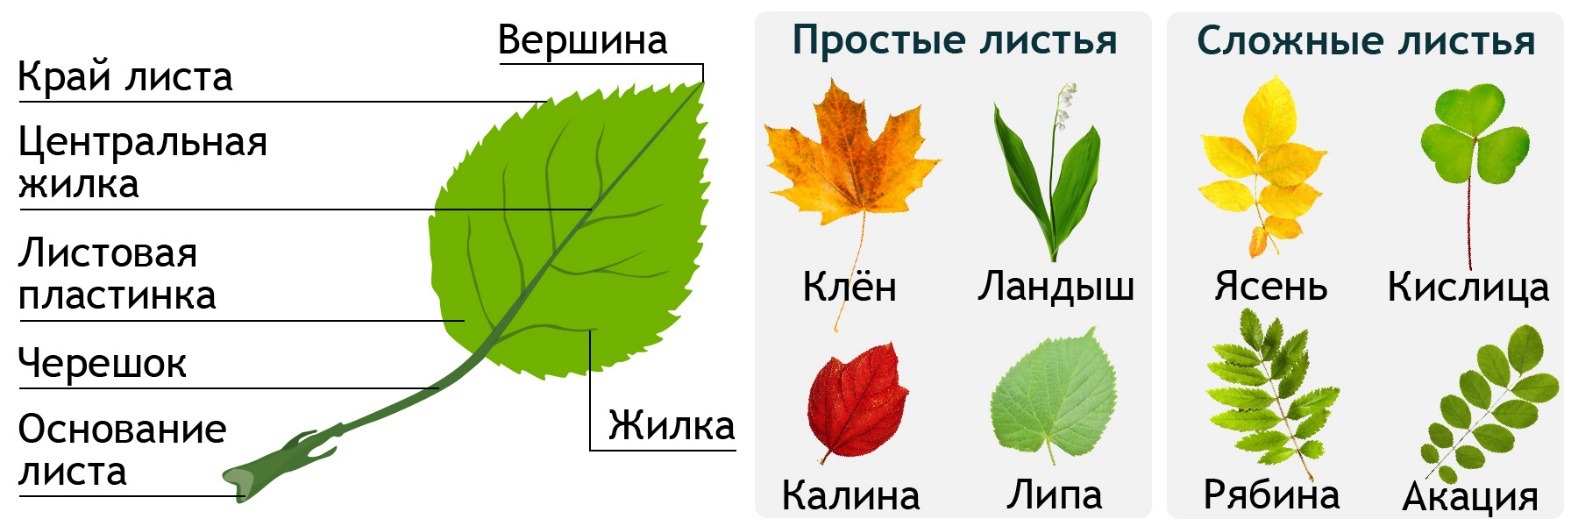 Биология 6 класс функция листьев. Строение устьица листа. Расположение устьиц на листе. Строение цветка. Функции листьев.